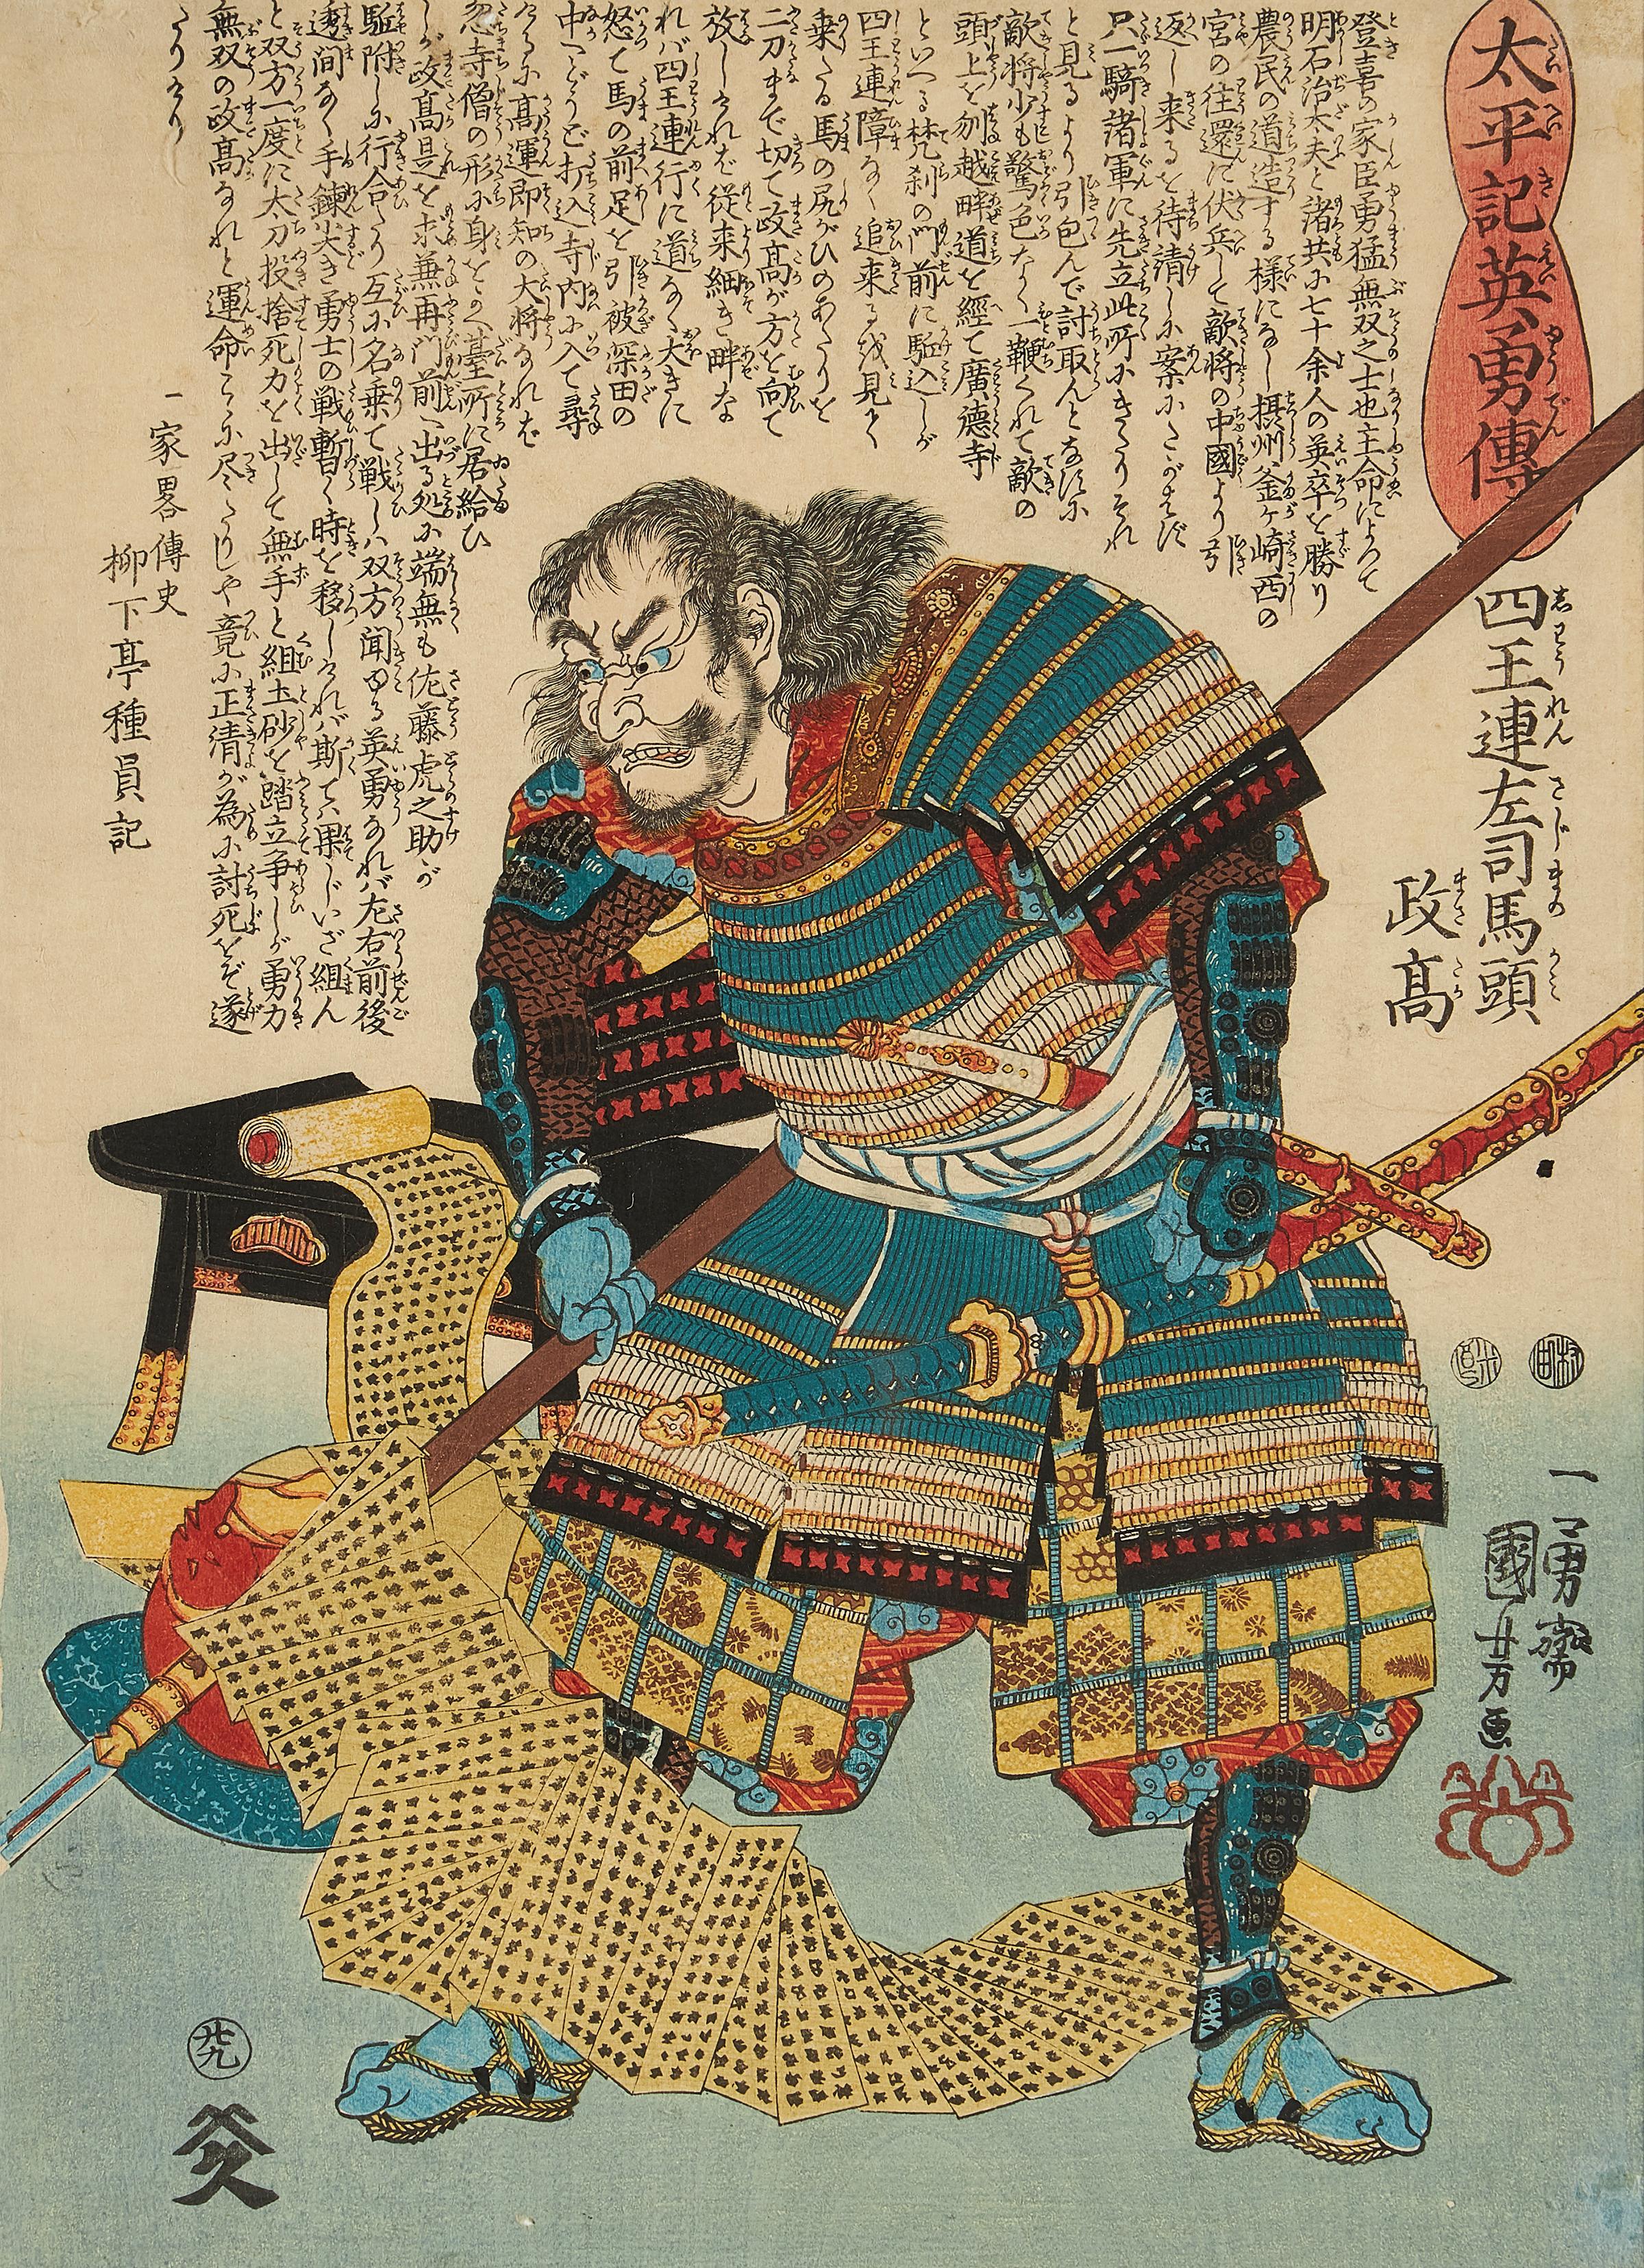 Utagawa Kuniyoshi (Japon, 1798-1861), ensemble de neuf estampes japonaises sur bois (ukiyo-e) de la série 